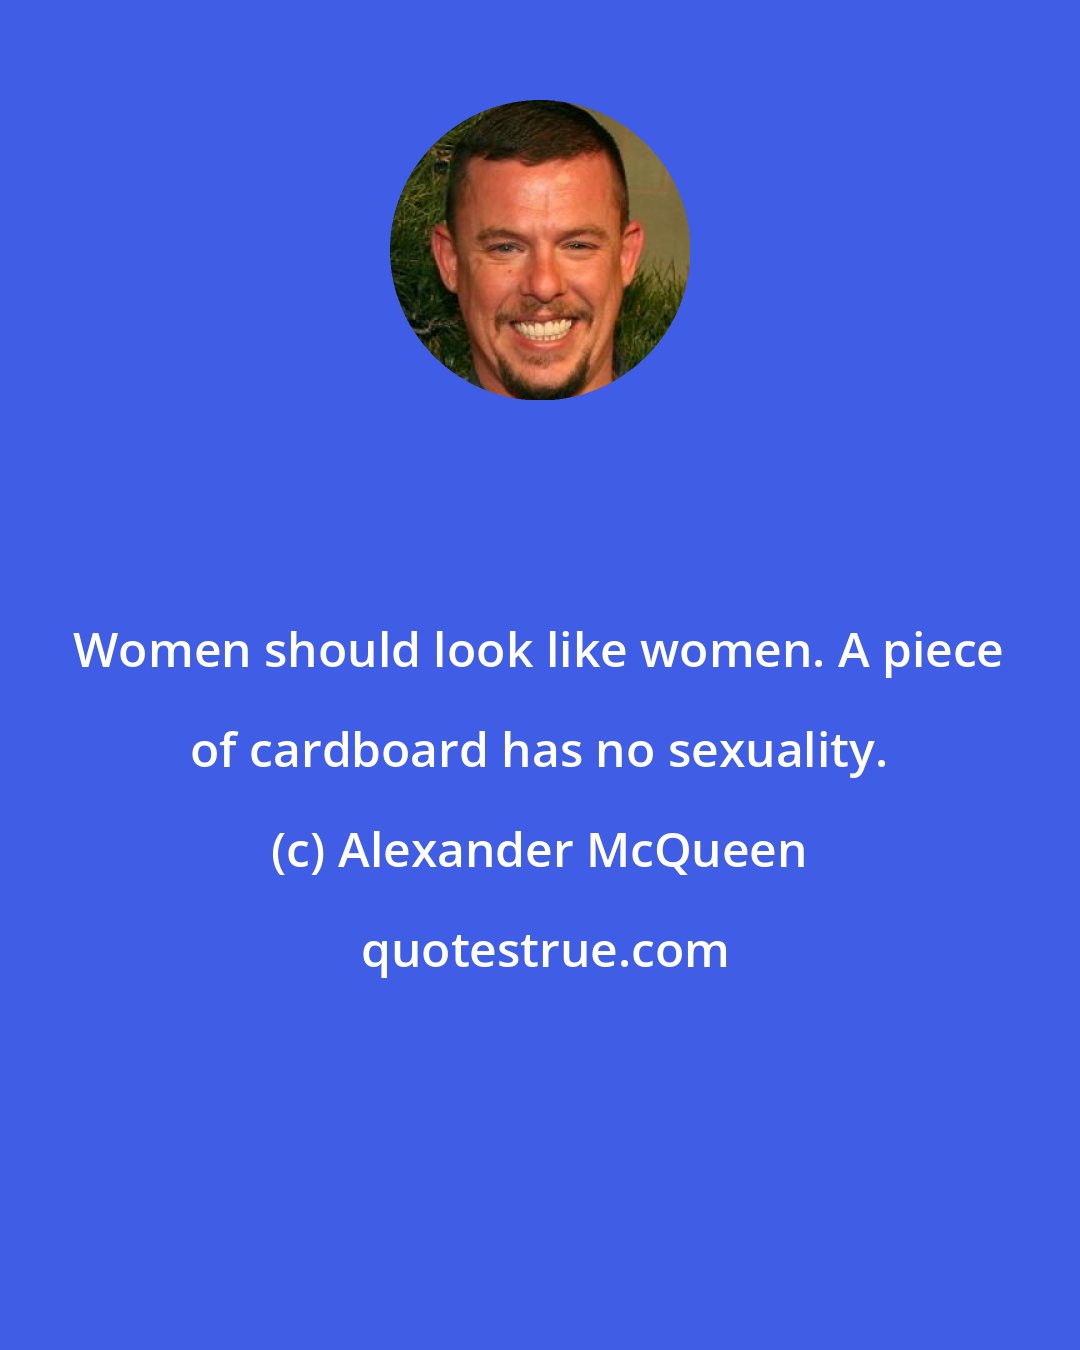 Alexander McQueen: Women should look like women. A piece of cardboard has no sexuality.